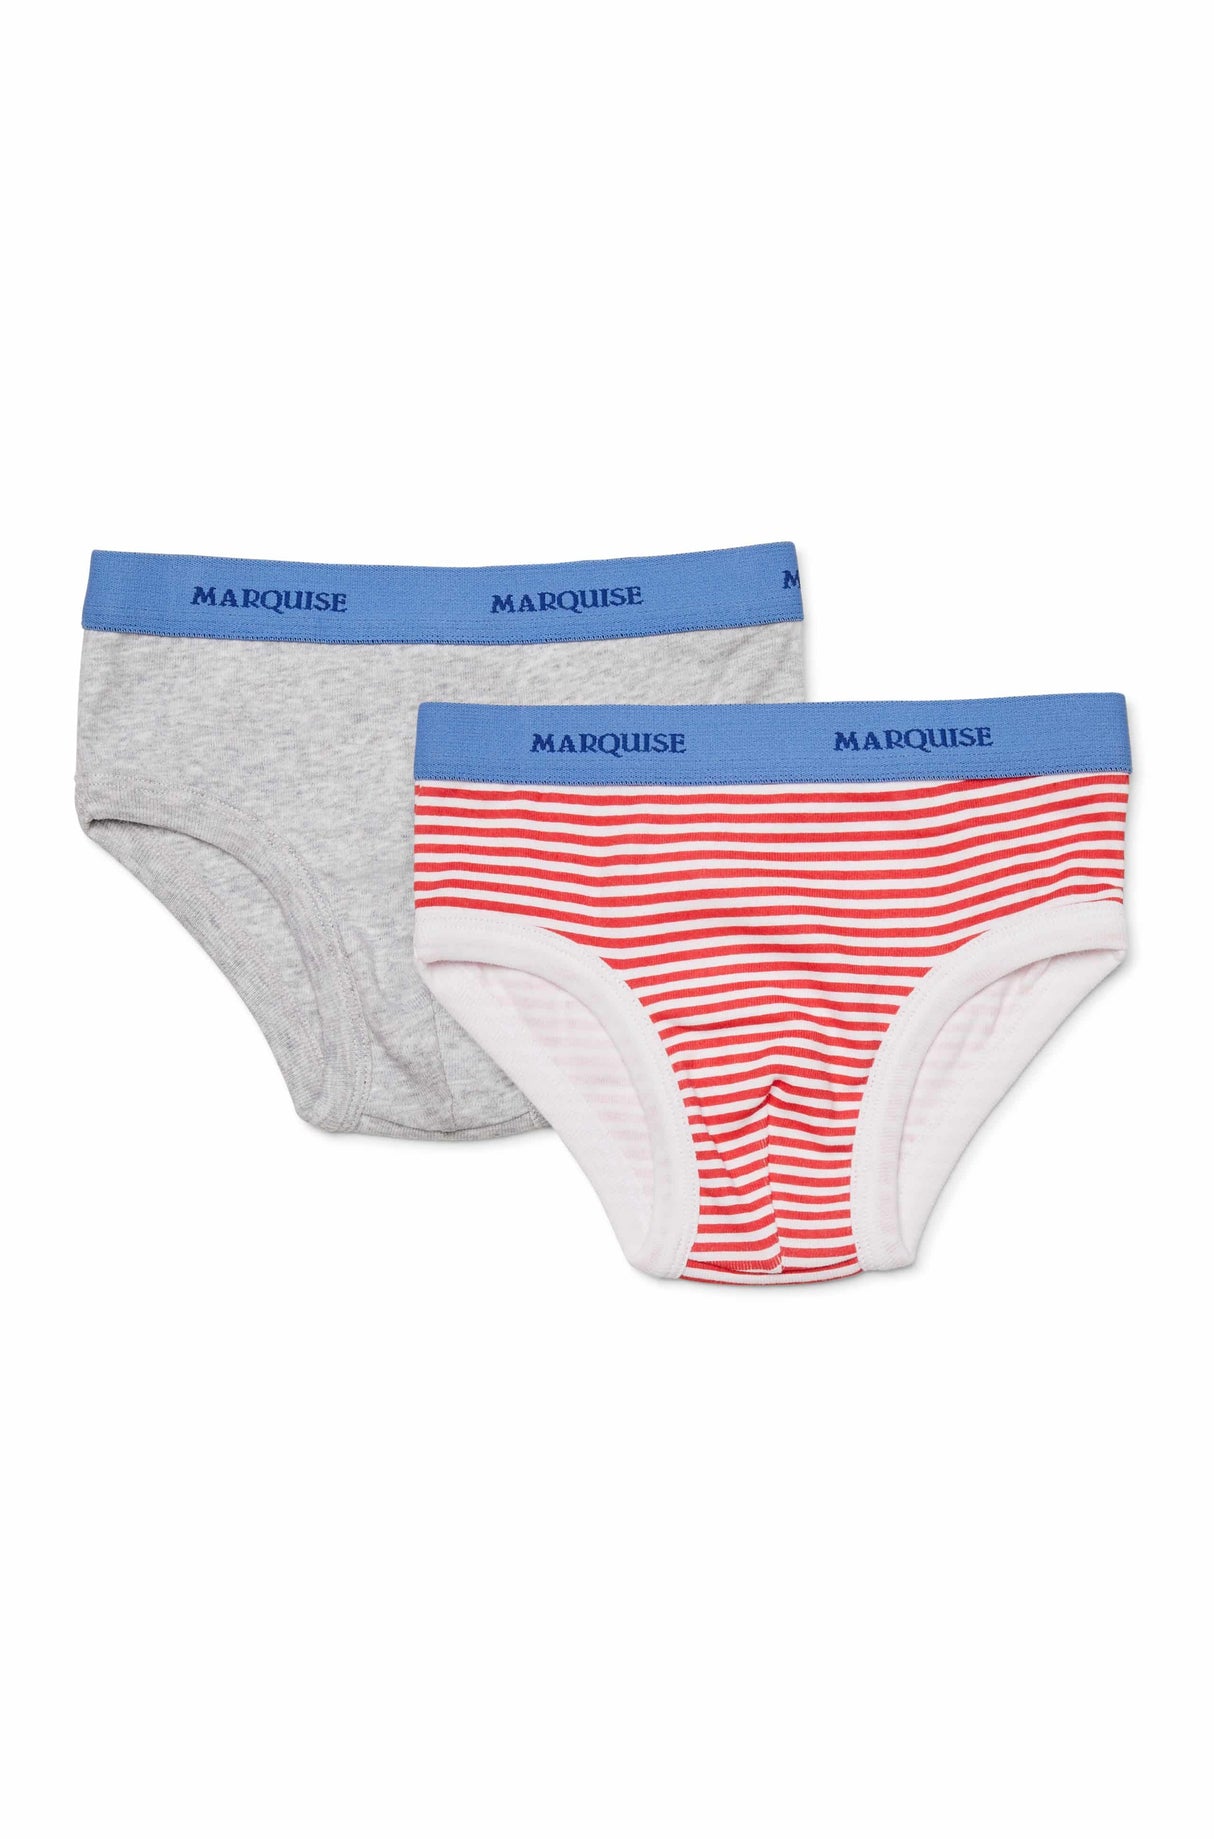 Boys Red Stripe & Grey Marle Underwear 2 Pack